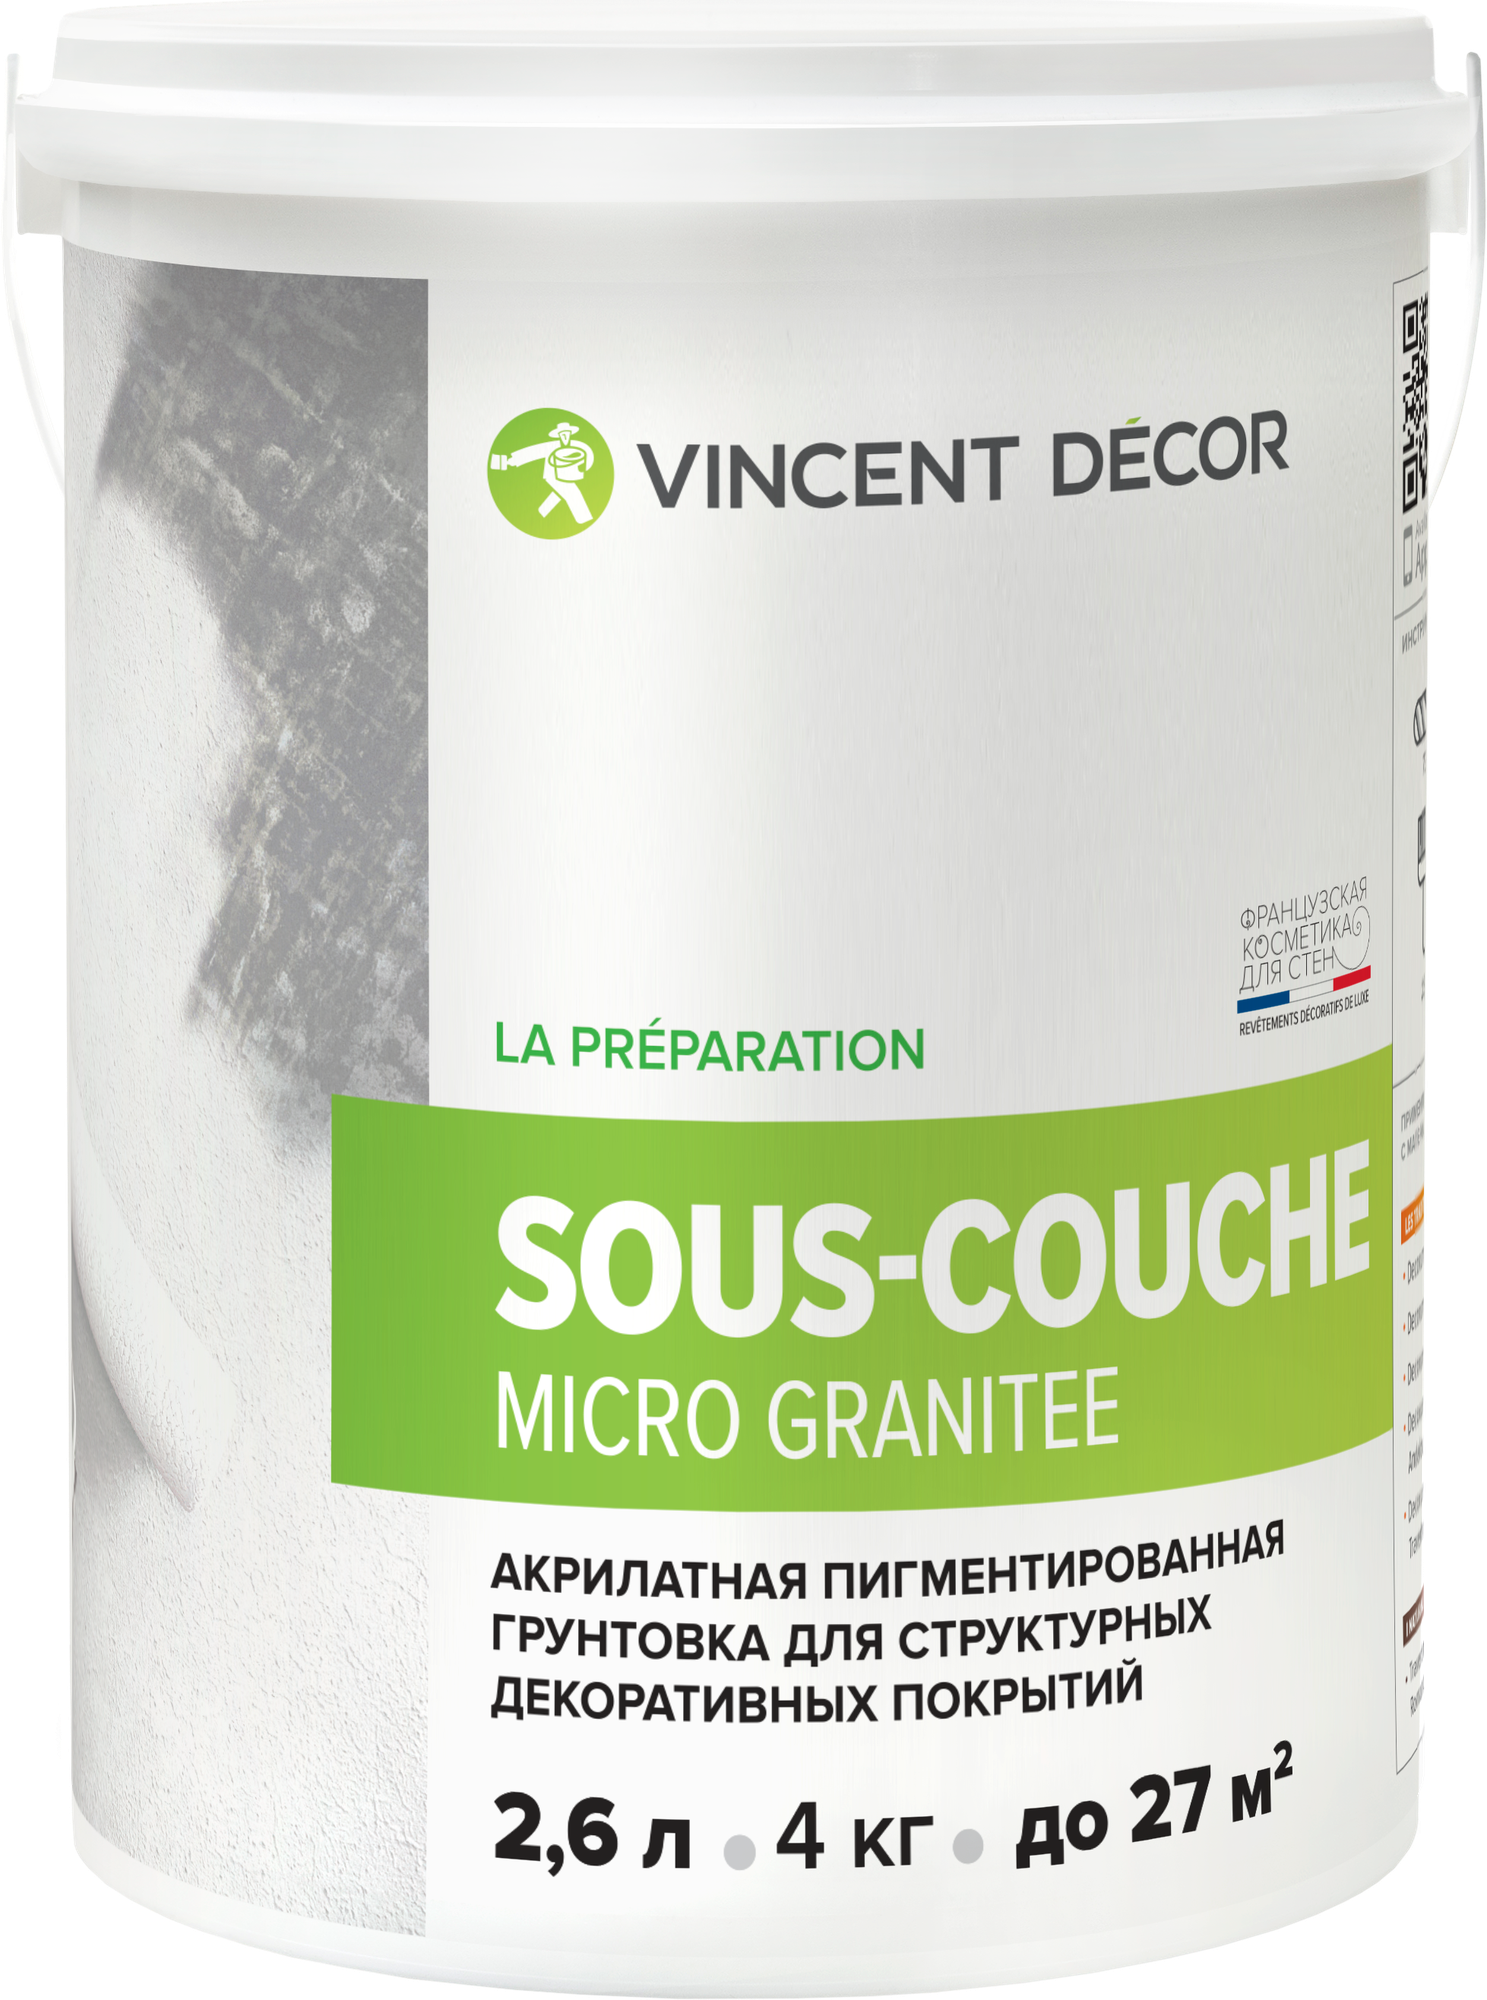 Пигментированная адгезионная грунтовка Vincent Decor Sous-Couche Micro Granitee / Винсент Декор Су-Куш Микро Гранит